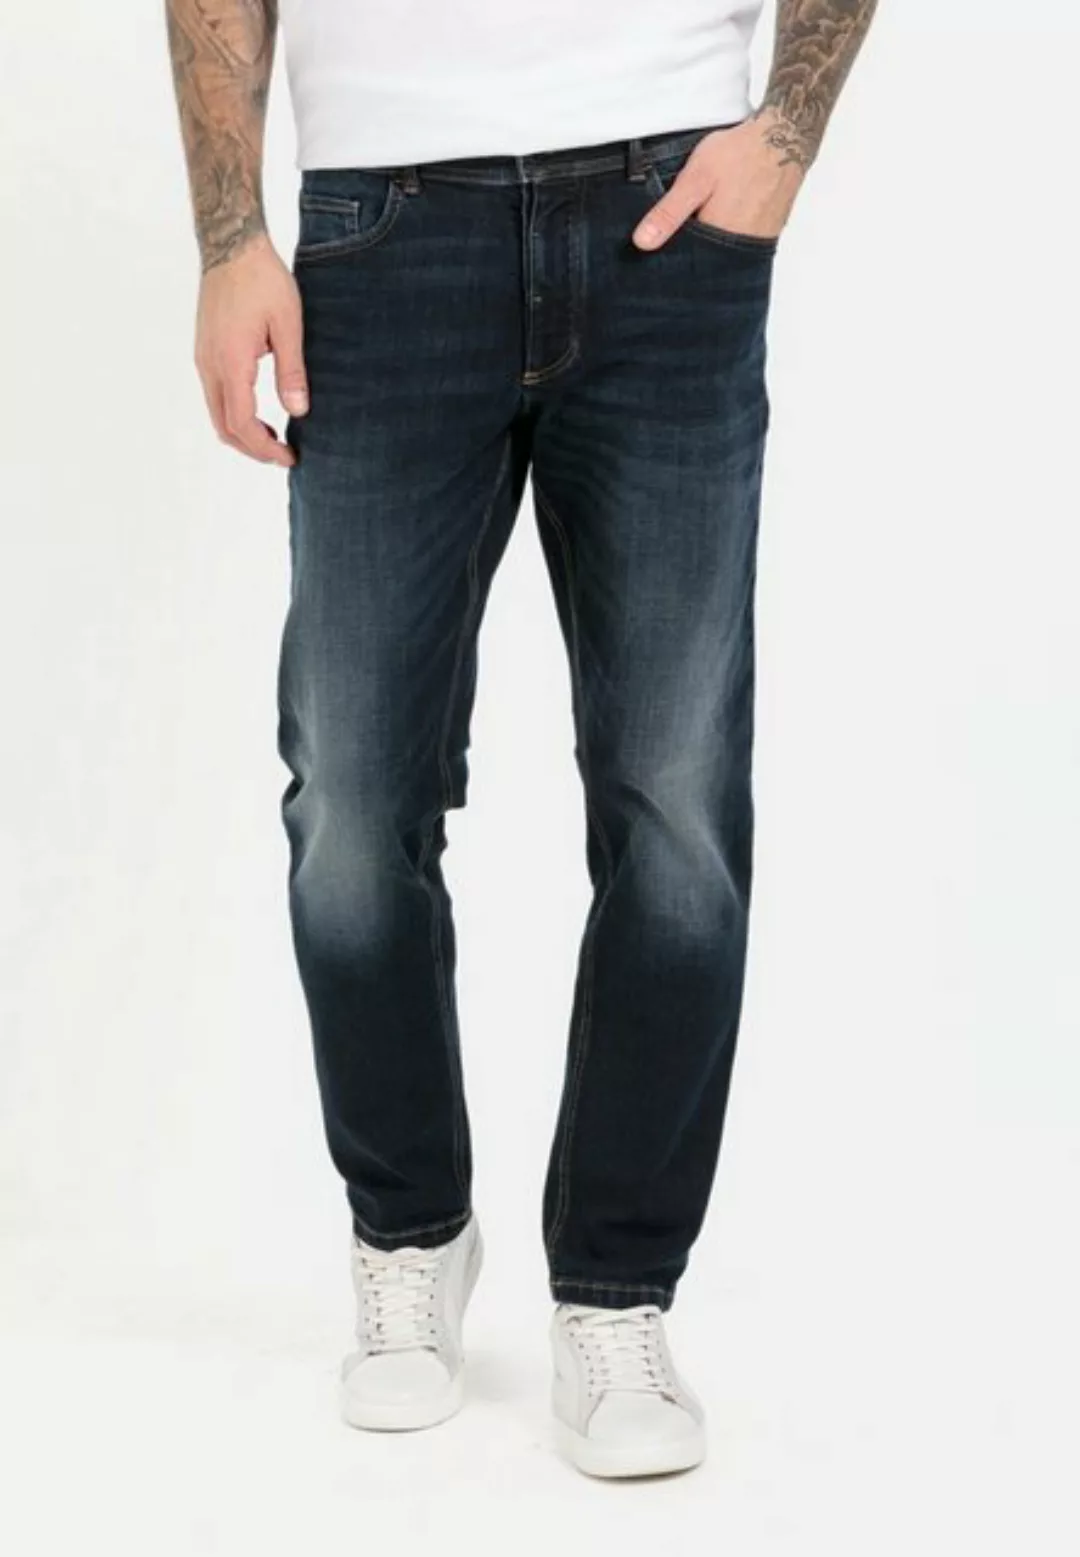 camel active 5-Pocket-Jeans mit kontrastfarbenen Nähten günstig online kaufen